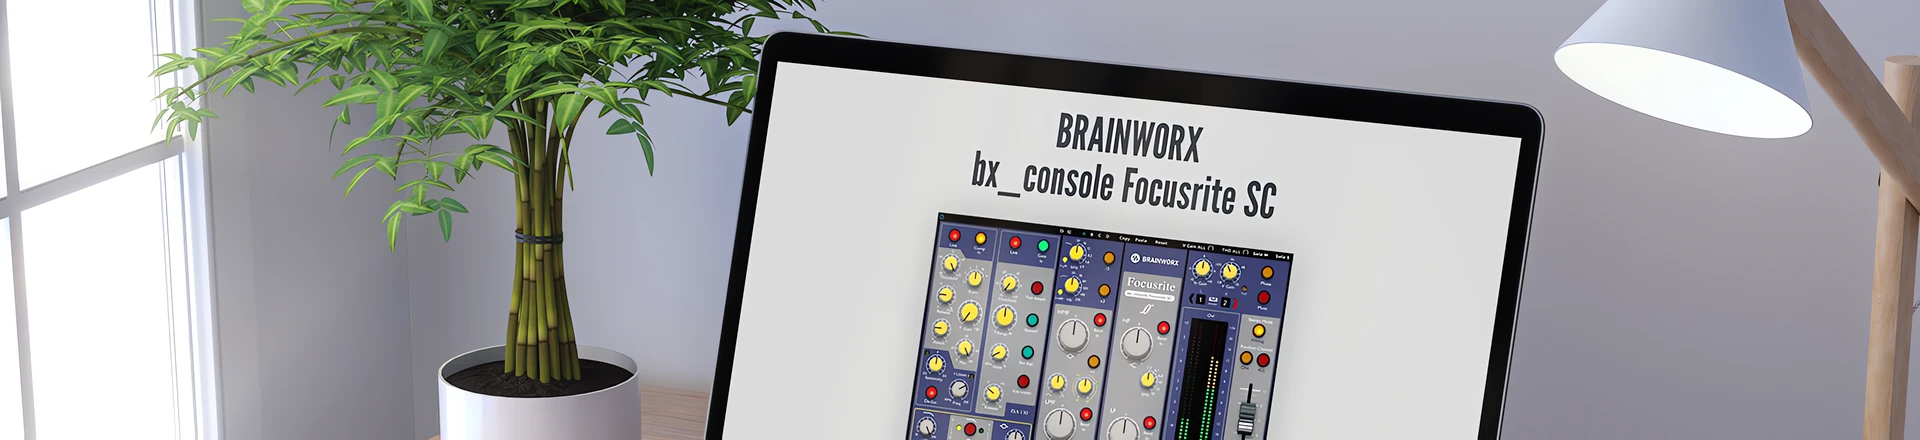 bx_console Focusrite SC - darmowa wtyczka dla użytkowników Focusrite